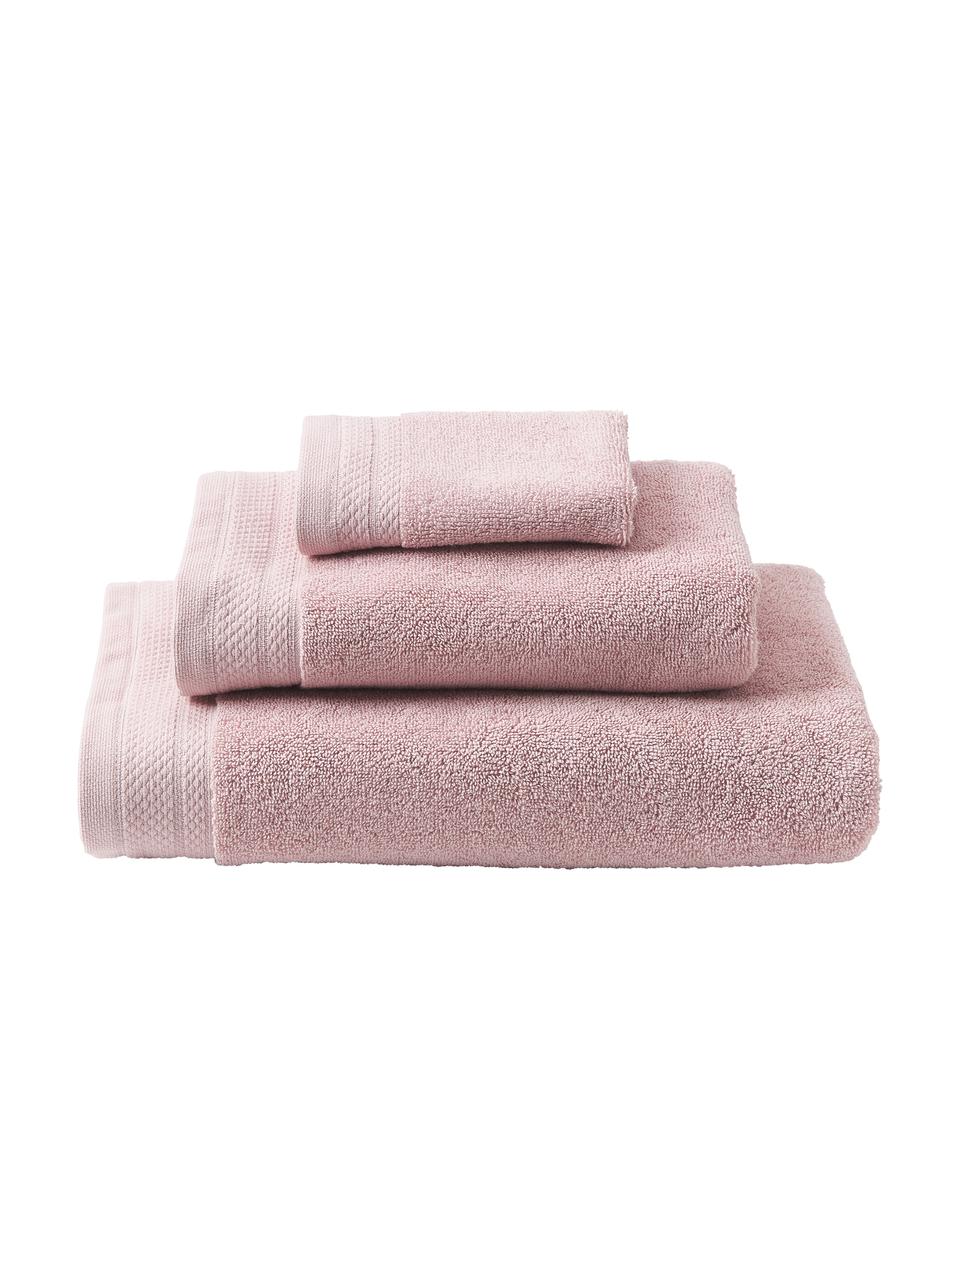 Súprava uterákov z organickej bavlny Premium, 3 diely, Staroružová, Súprava s rôznymi veľkosťami